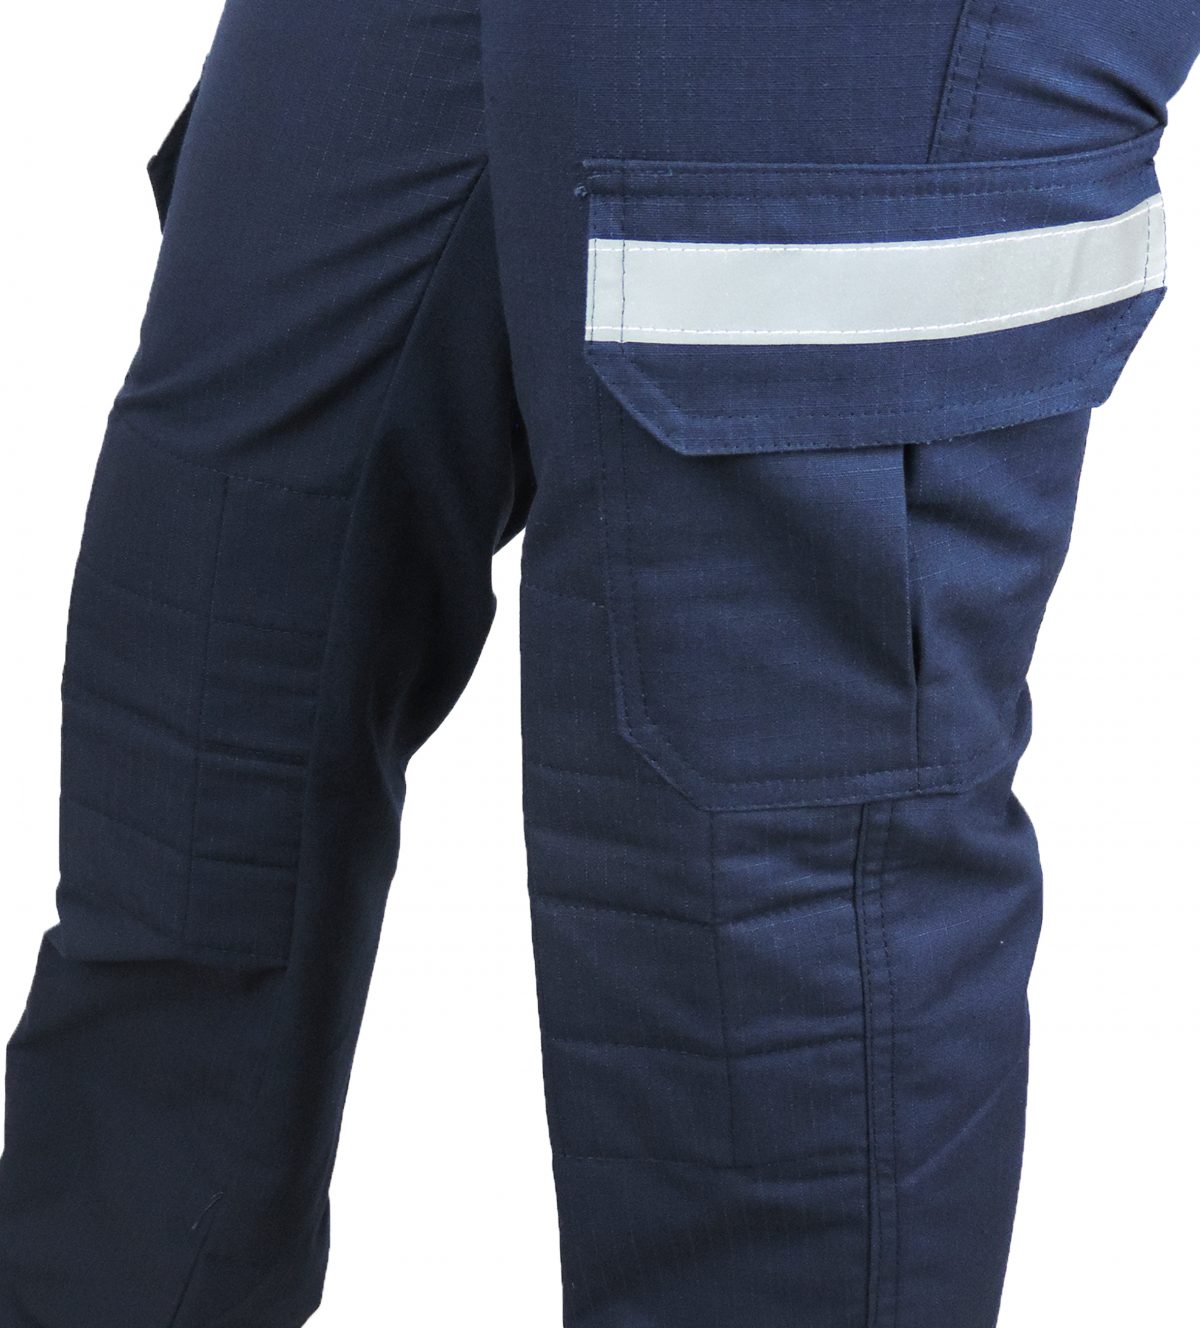 calca tatica com refletivo azul 2 scaled - Couro Art Bombeiro Civil, Saúde e Tático